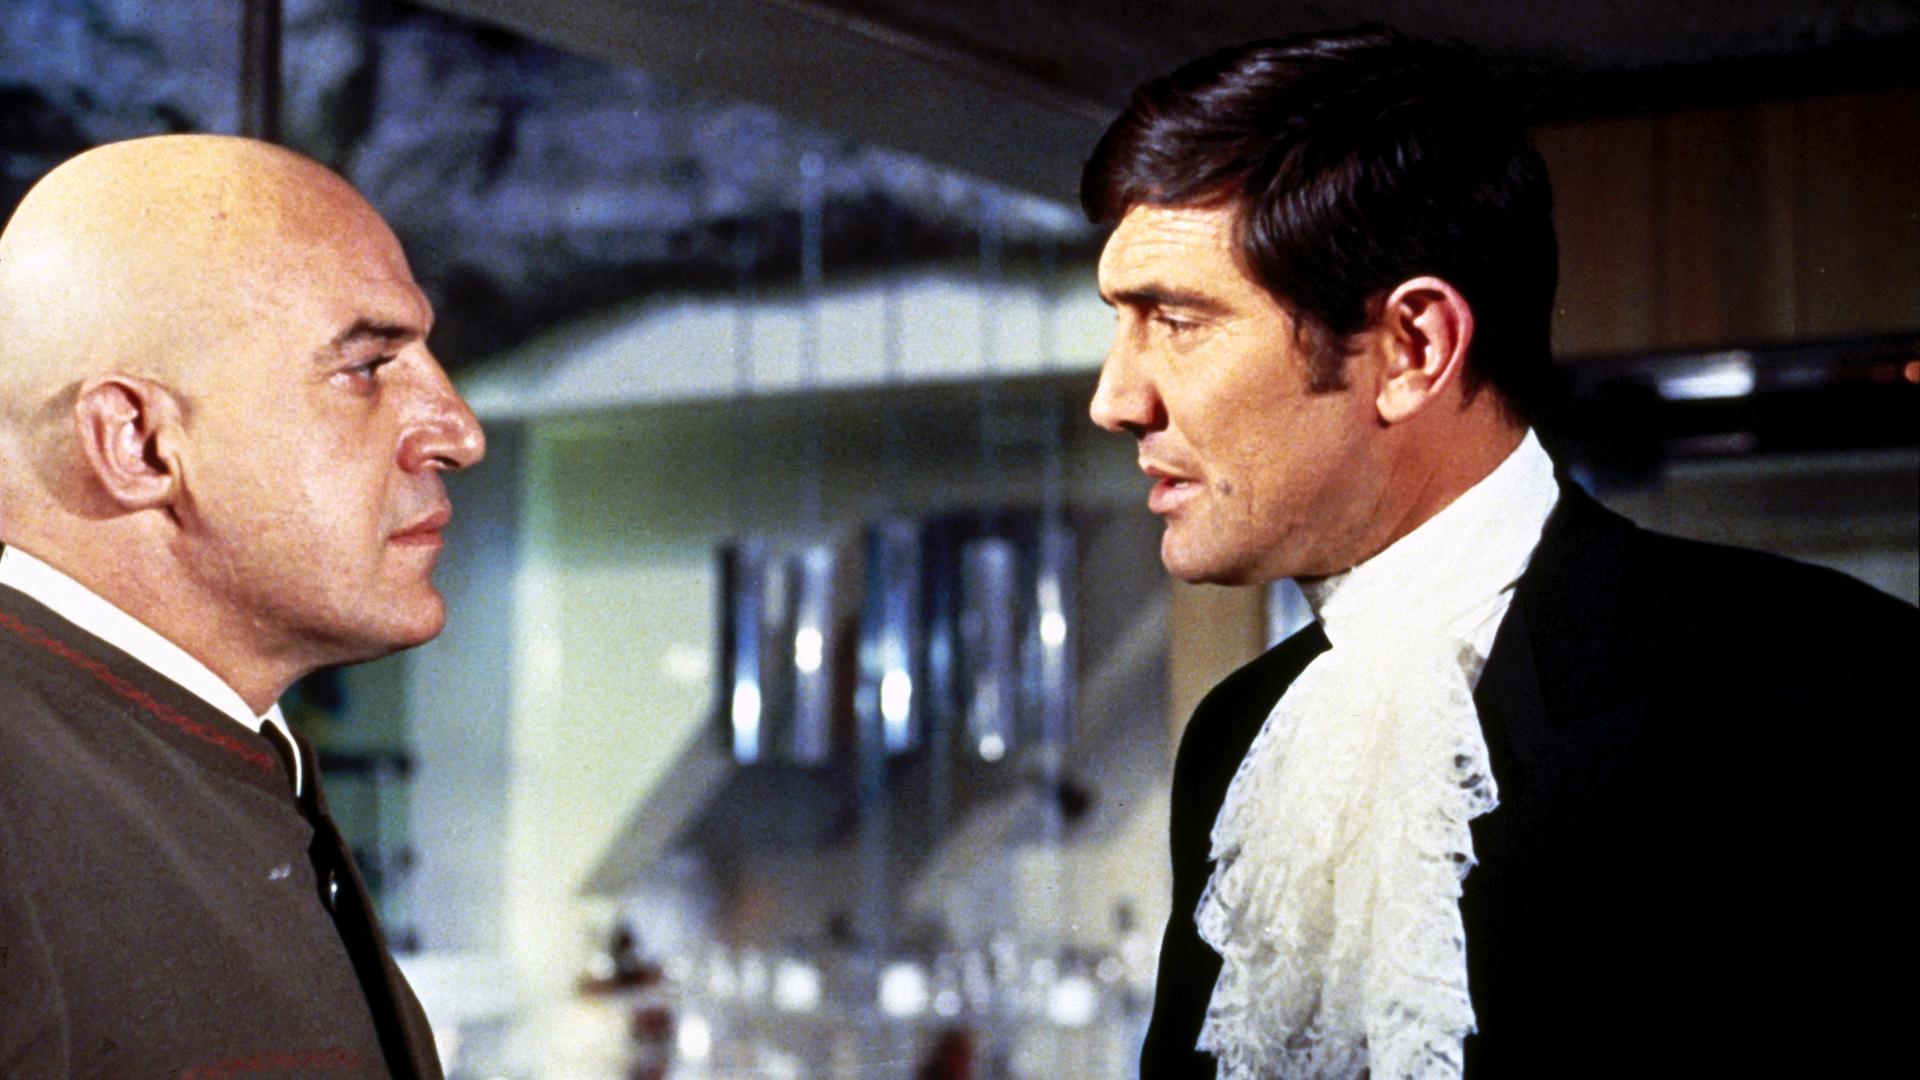 Agent 007 (George Lazenby) steht Blofeld (Telly Savalas) gegenüber und schaut ihn eindringlich an.